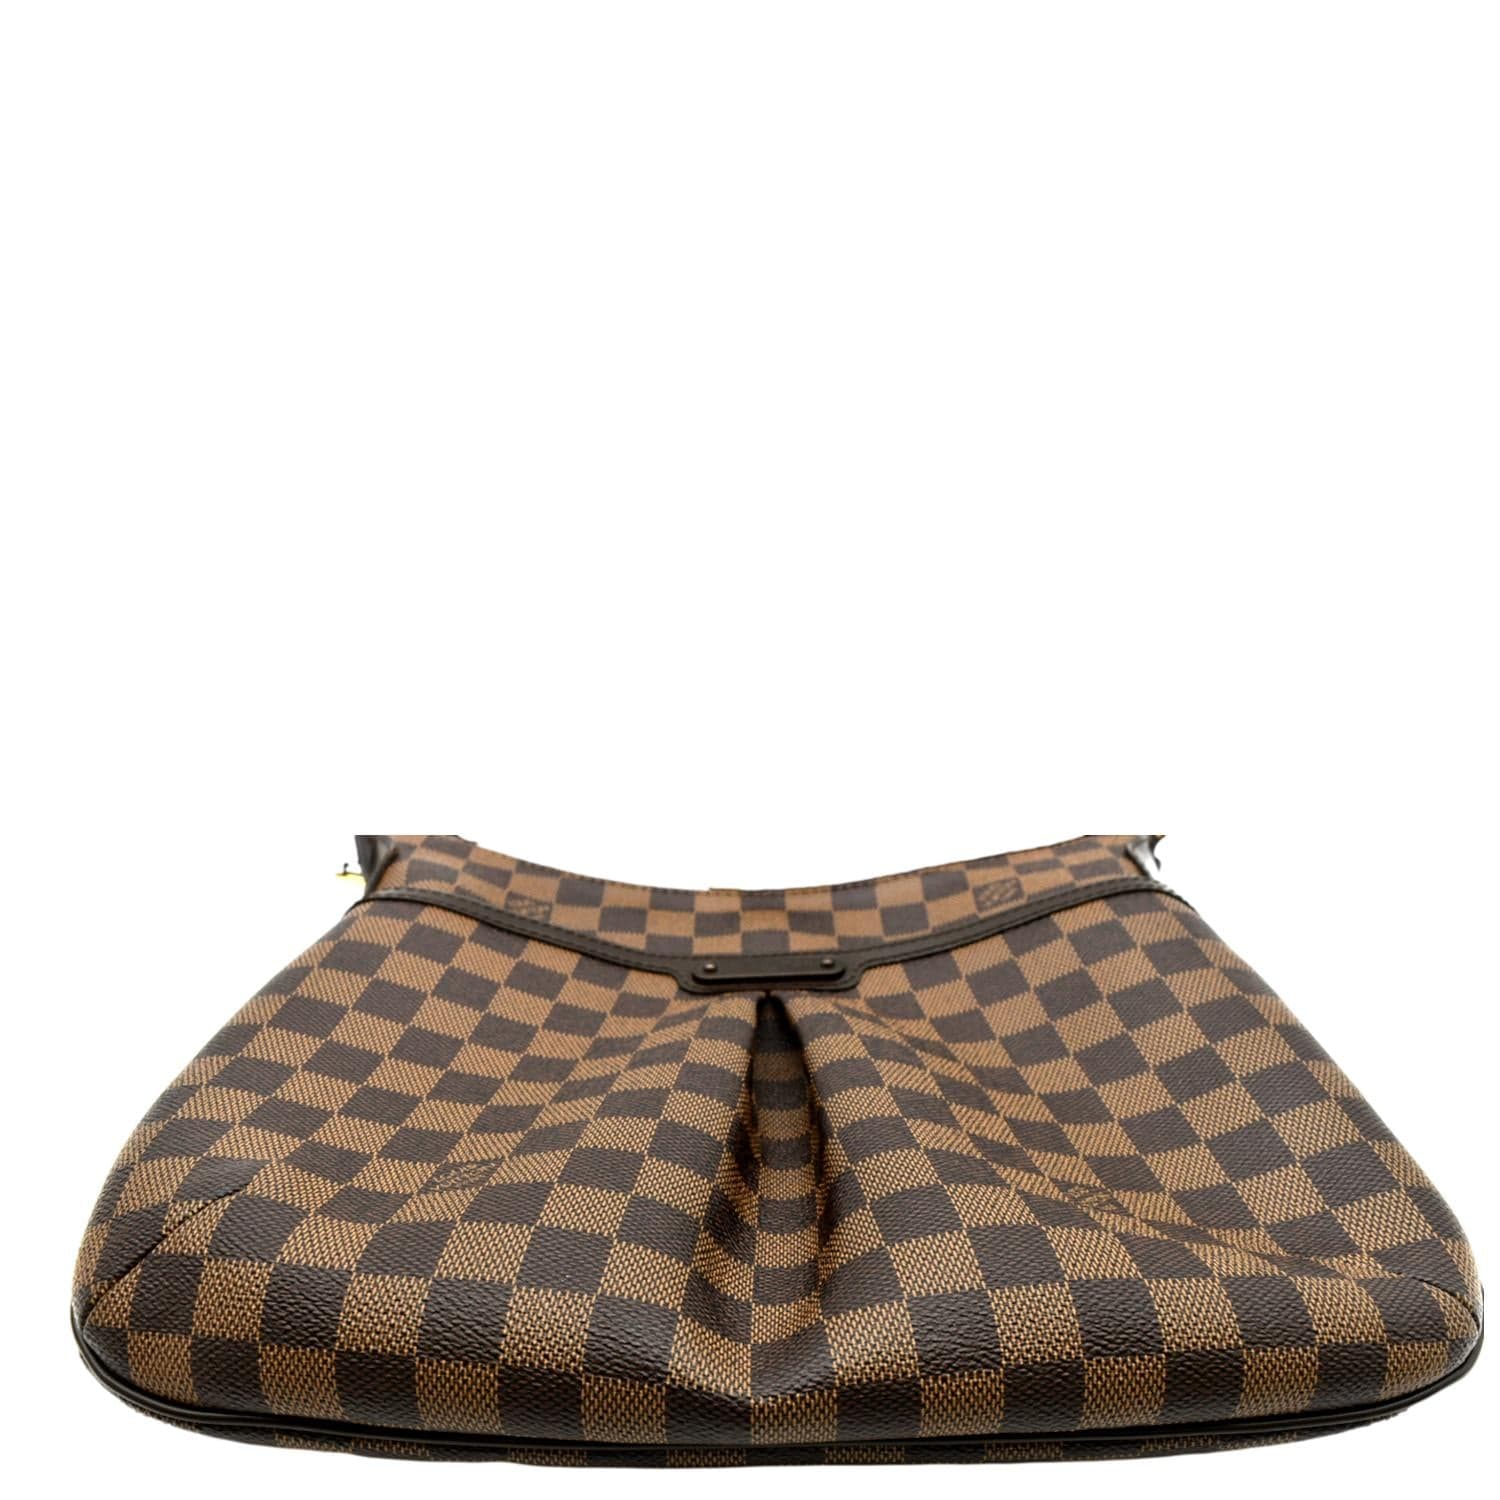 Louis Vuitton Bloomsbury Handbag Damier PM Brown 2292771